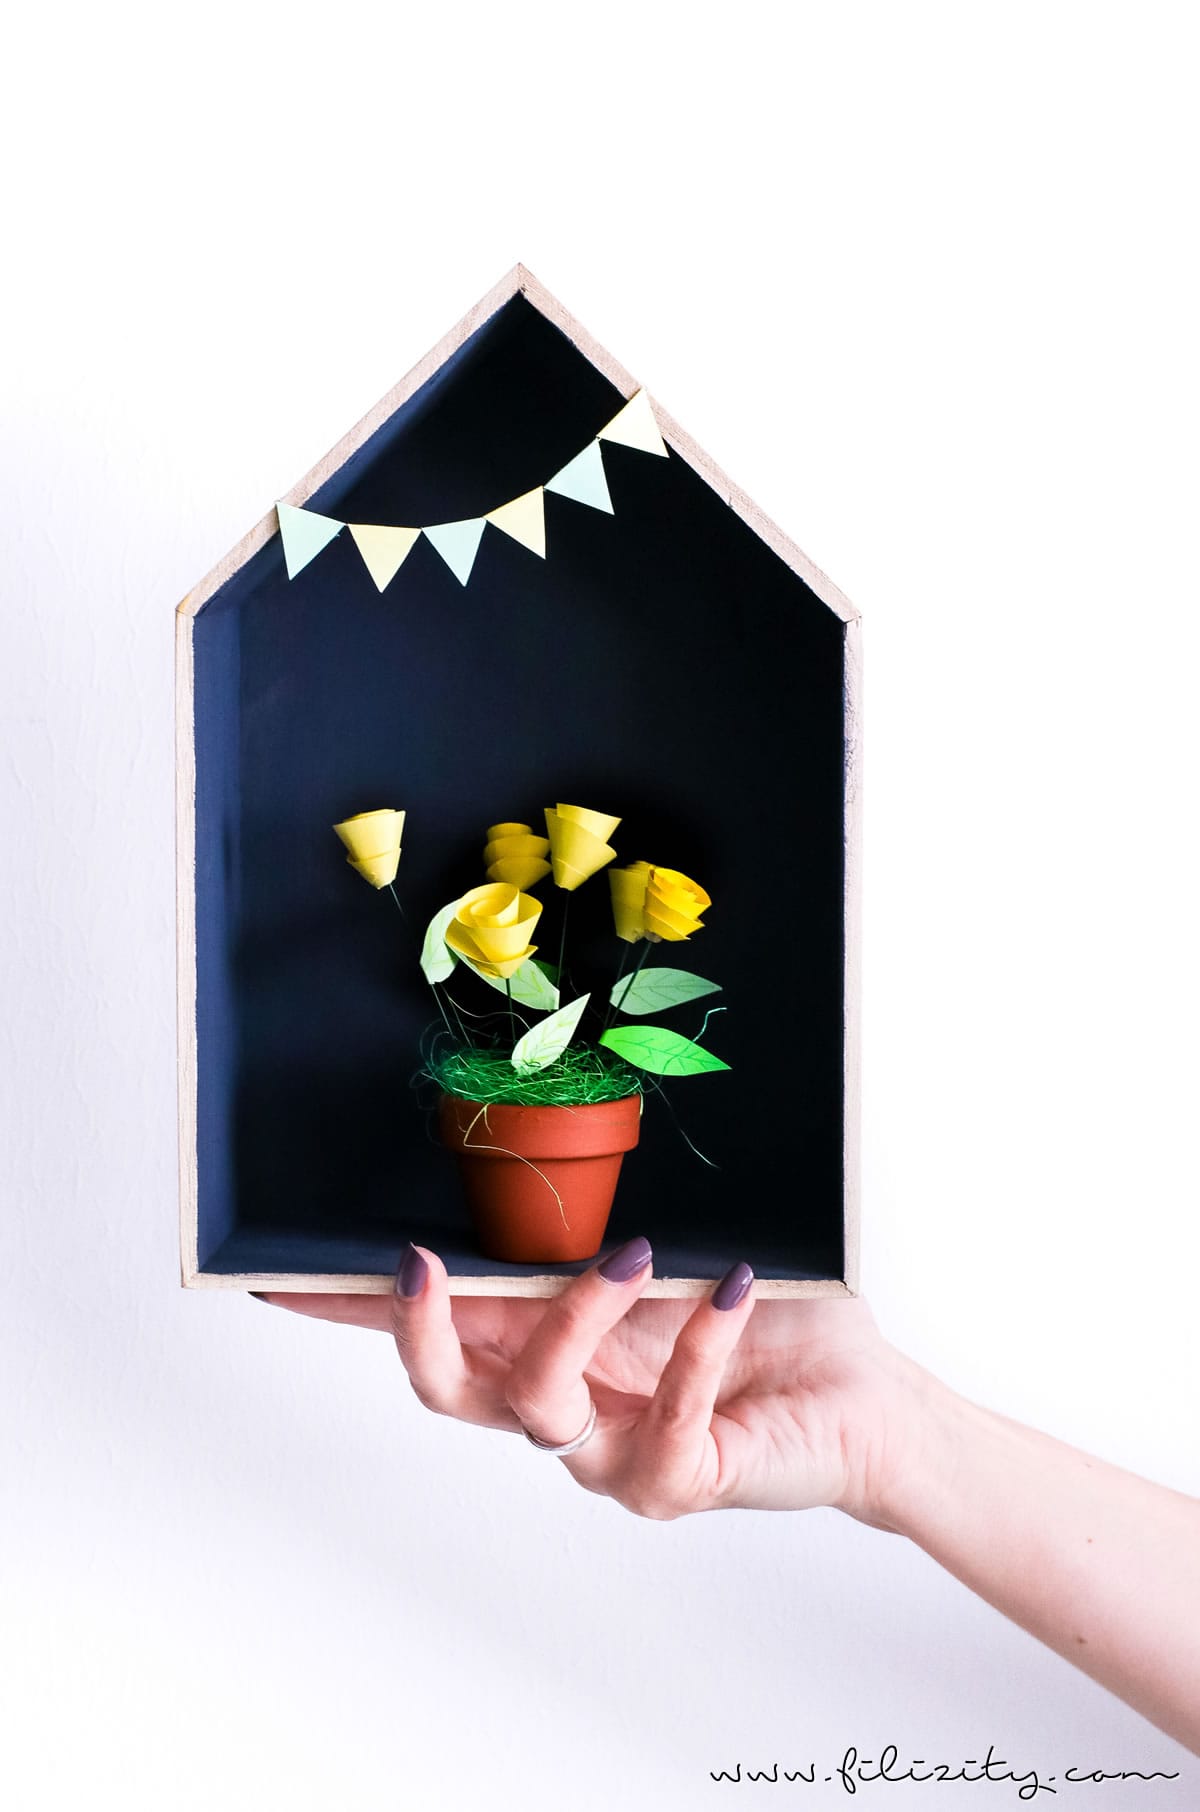 DIY Last Minute Muttertagsgeschenk Gutschein-Blumen basteln | Filizity.com - DIY-Blog aus dem Rheinland #muttertag #geschenkidee #gutschein #origami